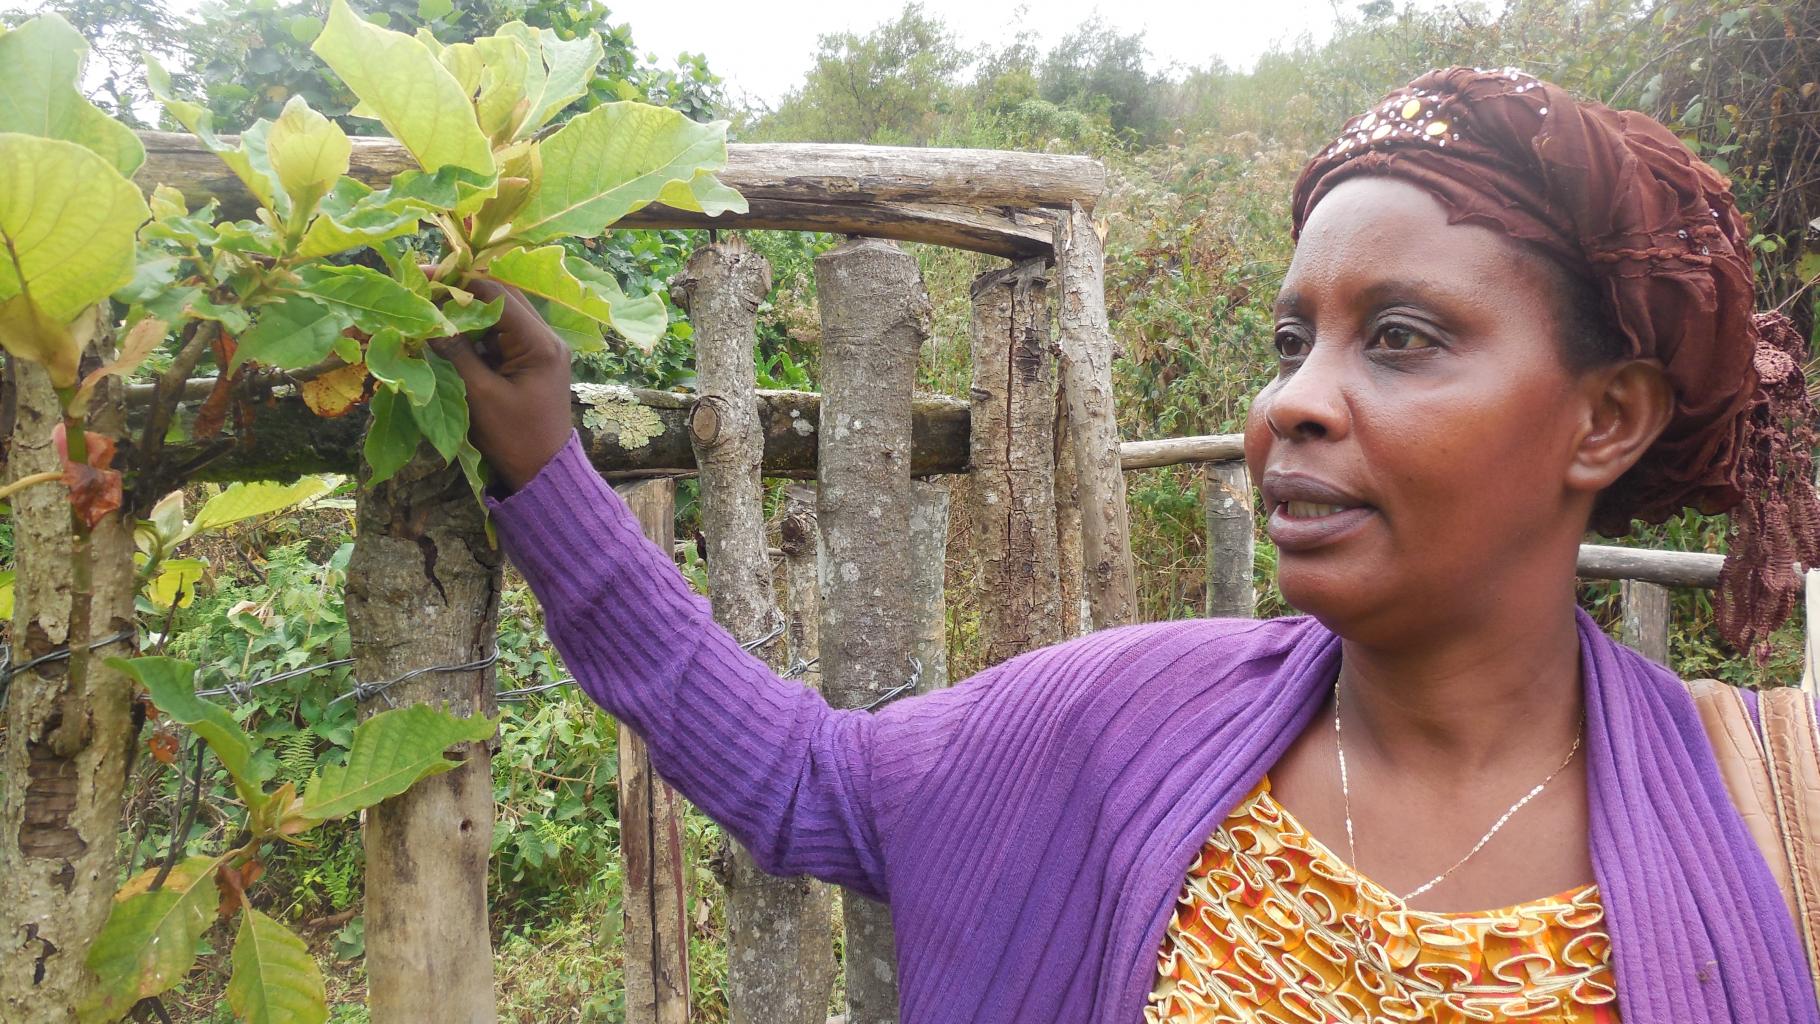 Gudile Nasine von Oxfams kongolesischer Partnerorganisation zeigt, wie Bäume als natürliche Einzäunungen für Felder und Quelleinfassungen genutzt werden.